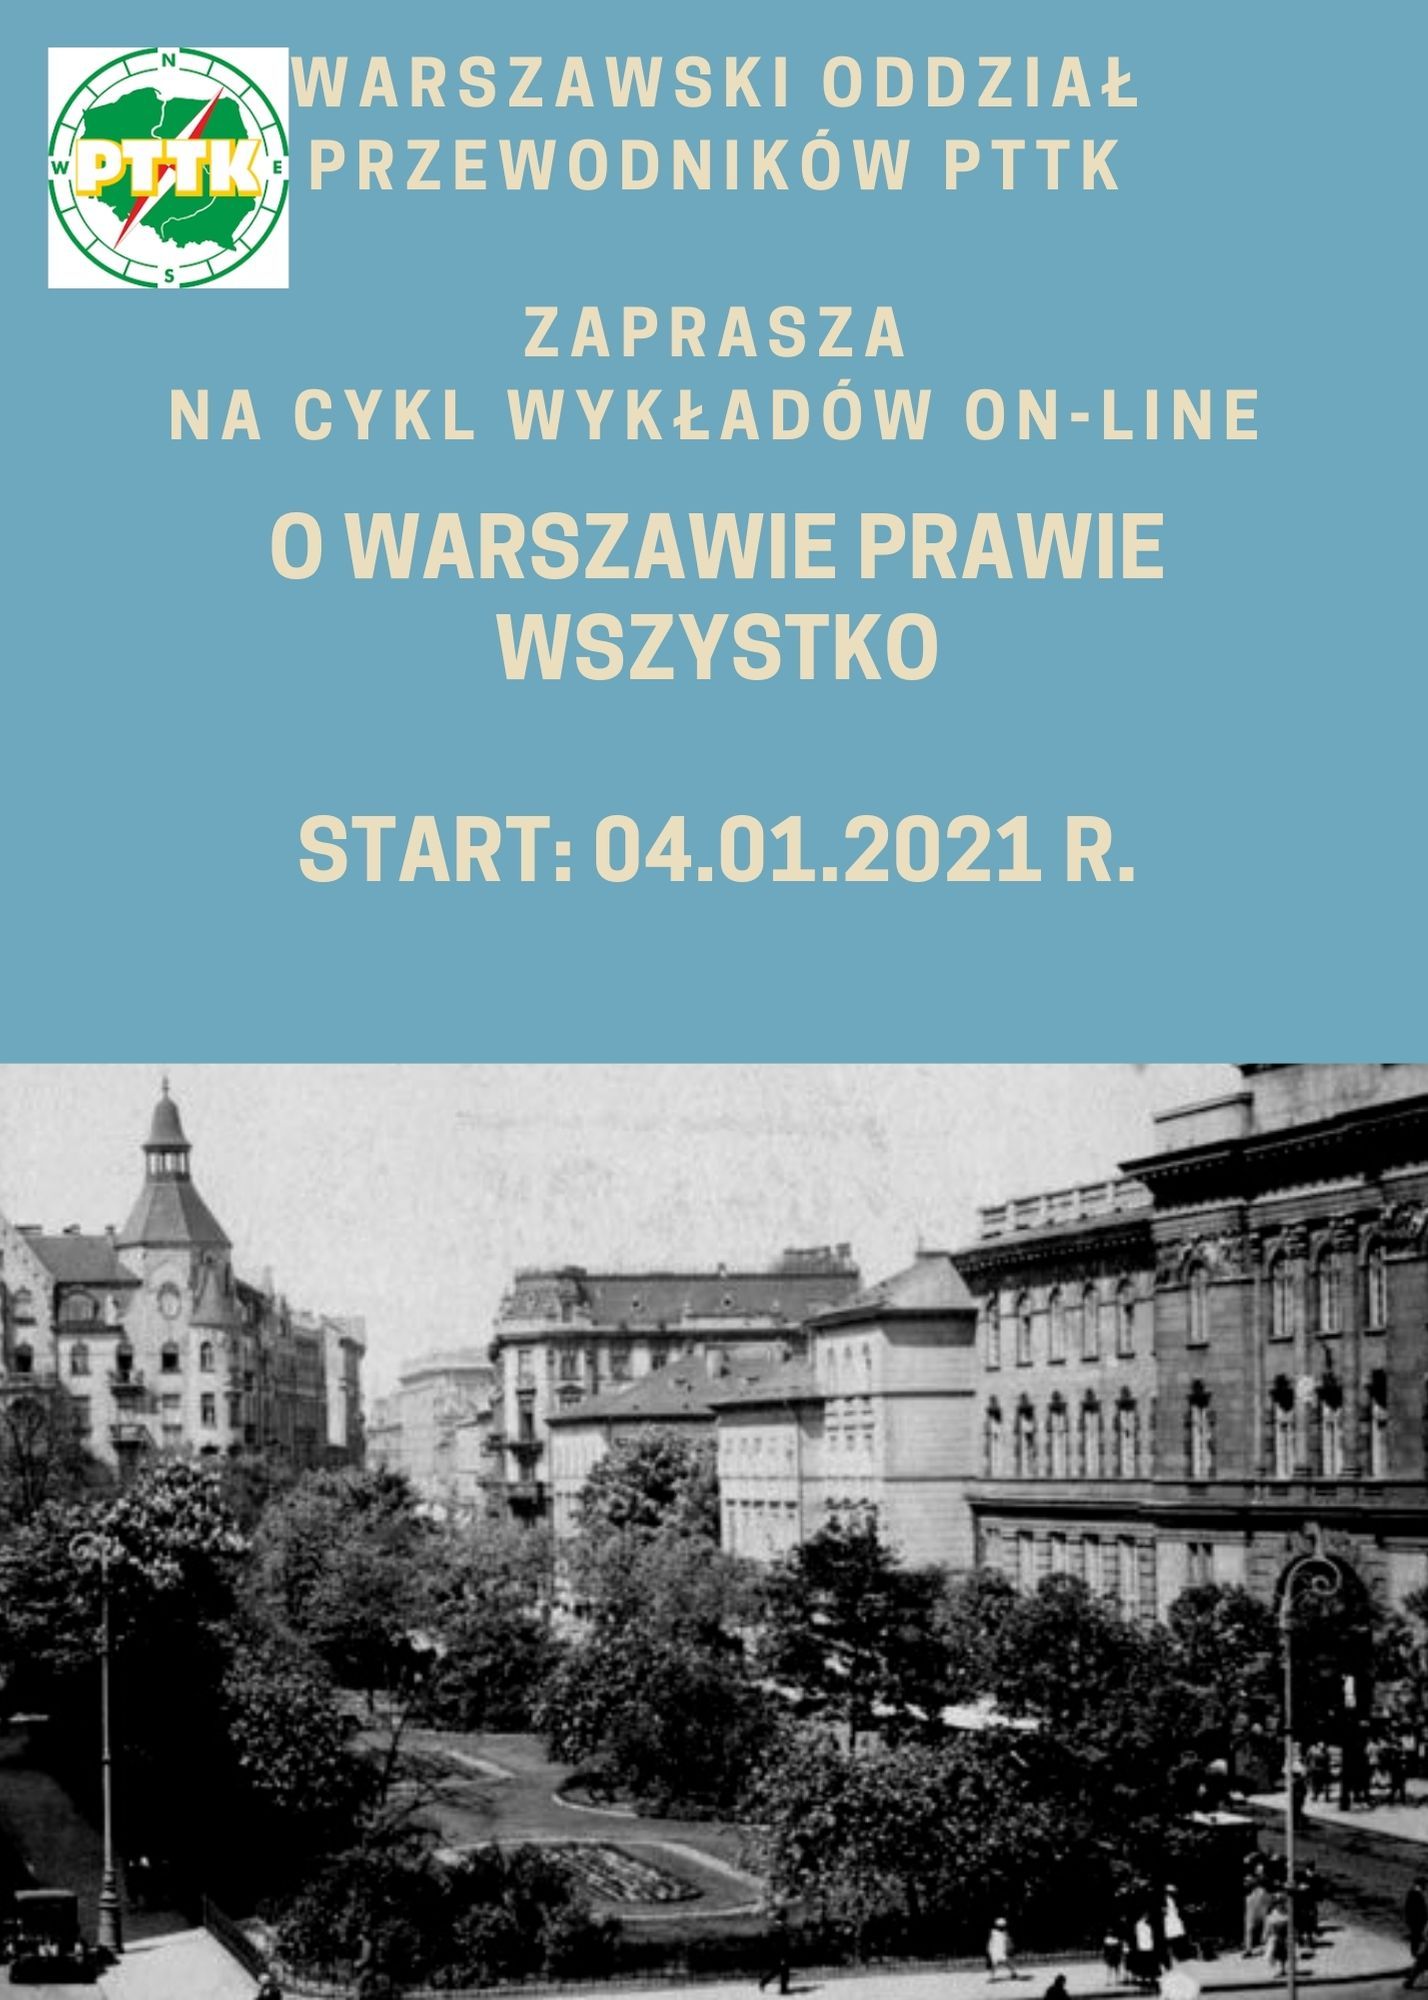 O Warszawie prawie wszystko - cykl wykładów dot. historii Warszawy. Rozpoczynamy 11.01.2021 r.